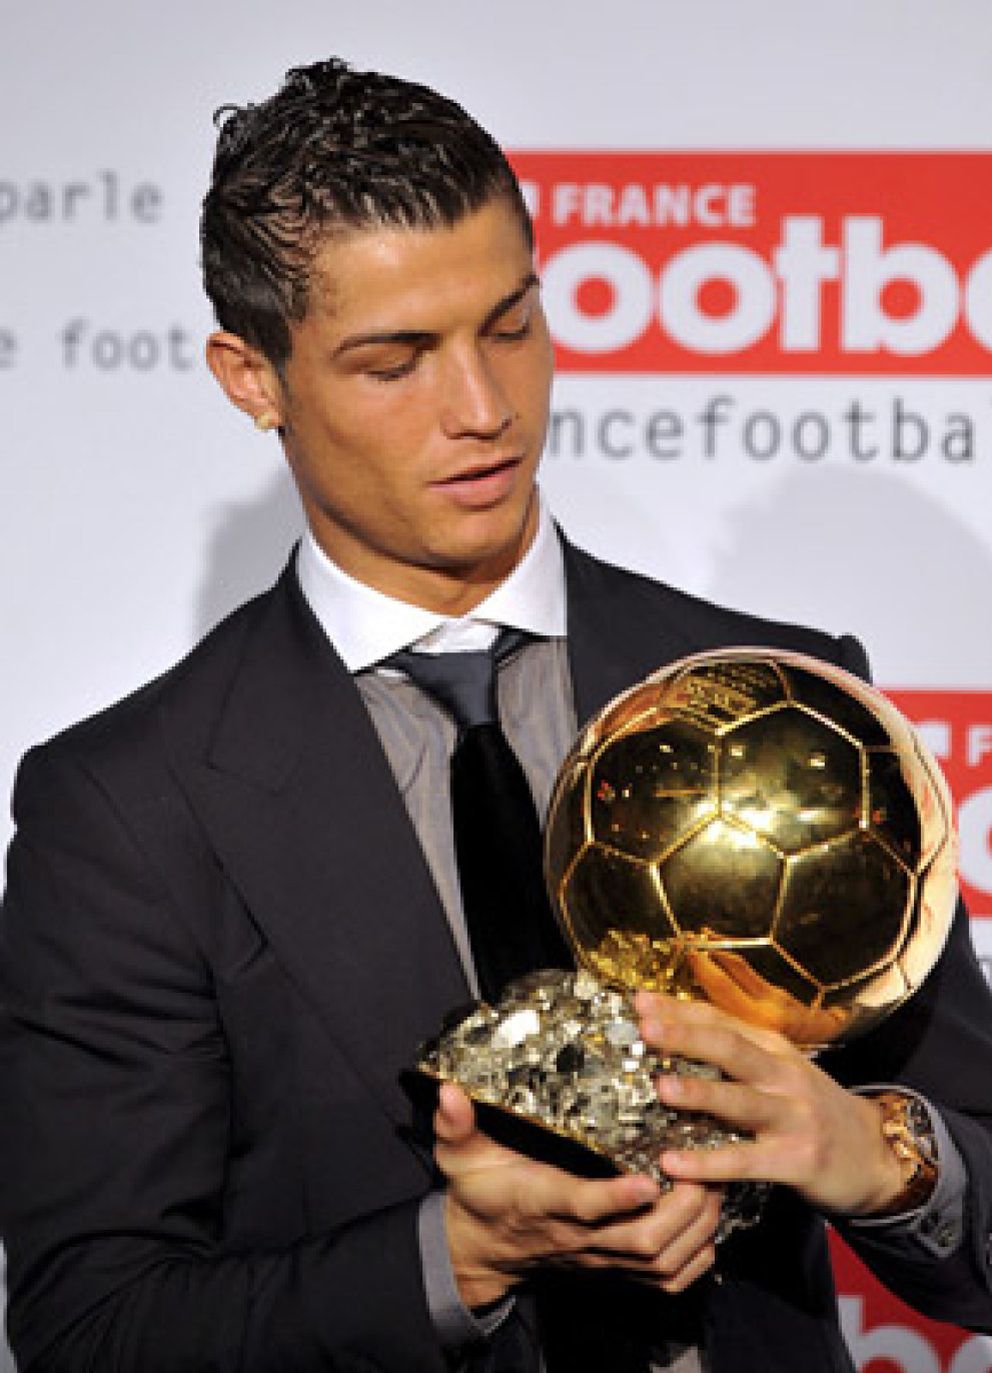 Foto: Cristiano Ronaldo ve a Messi, Xavi y Eto'o favoritos para el Balón de Oro